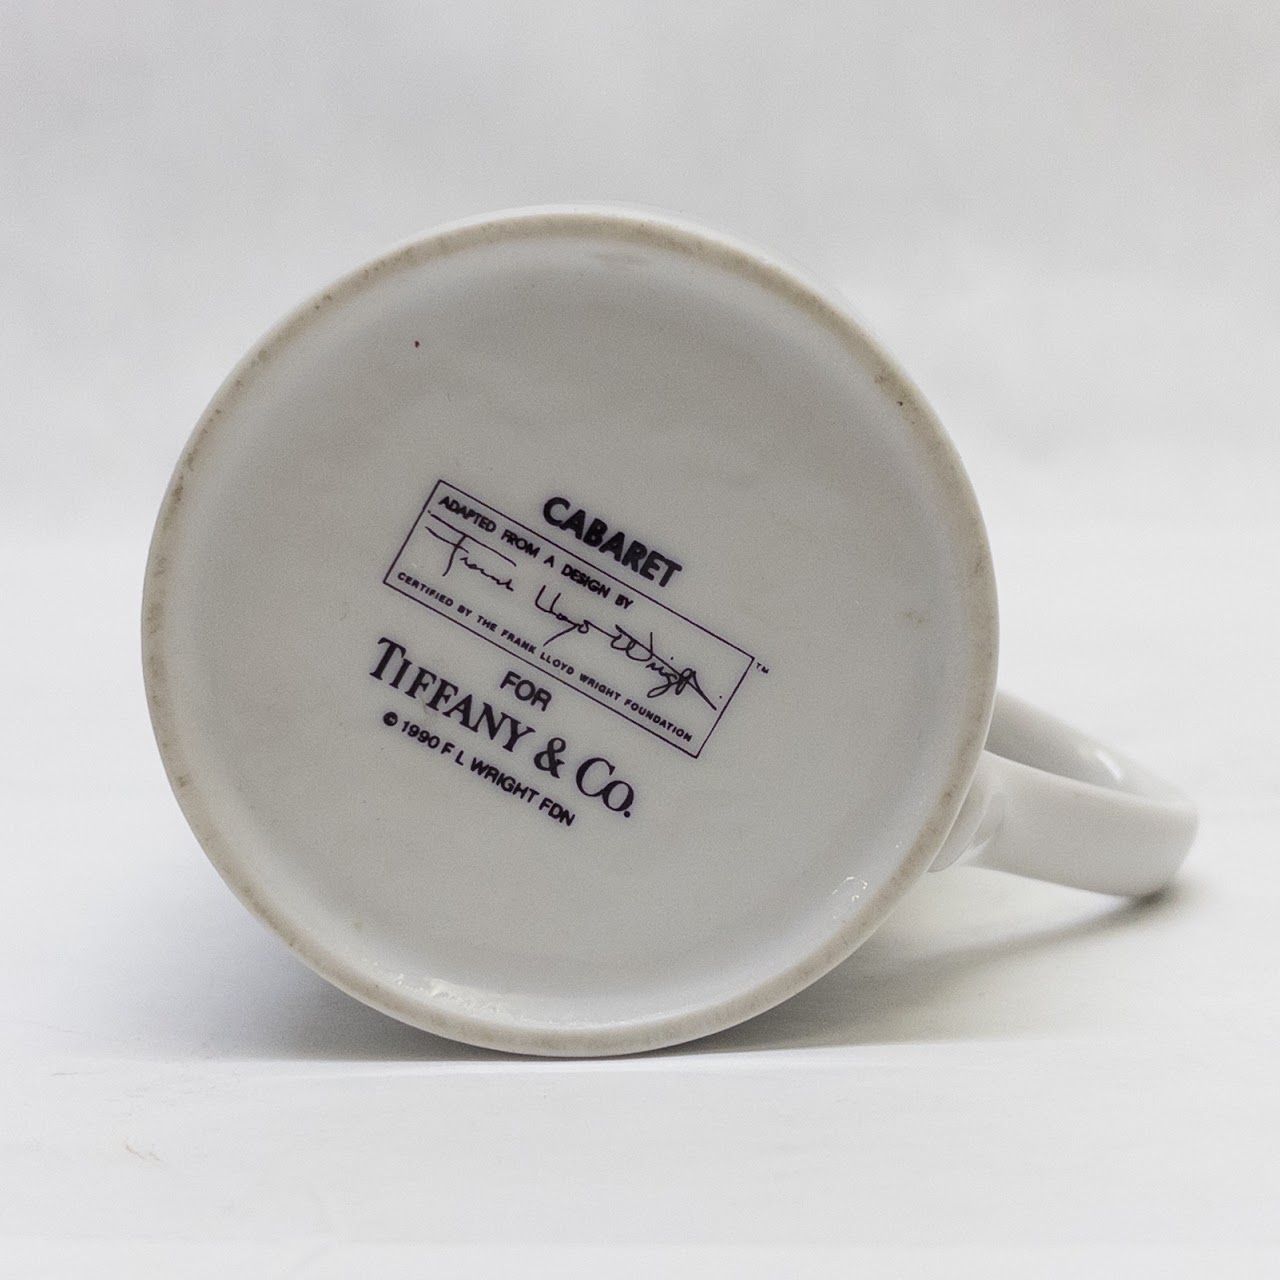 Tiffany & Co. Frank Lloyd Wright Cabaret Mug